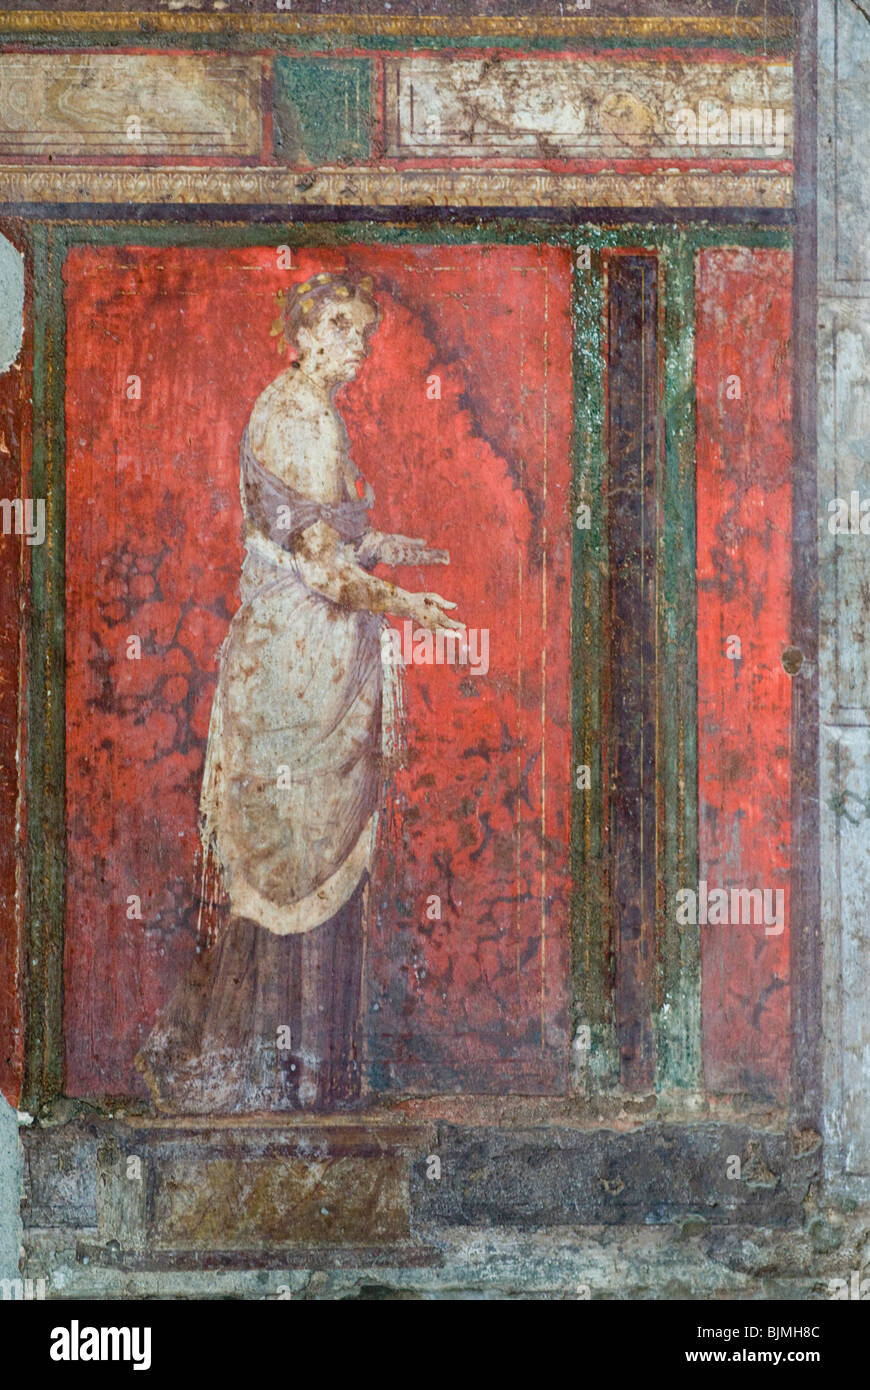 Italy, Campania, Pompeii, archaeological district, excavations of the Roman town of Pompeii, Villa dei Misteri, frescoes Stock Photo